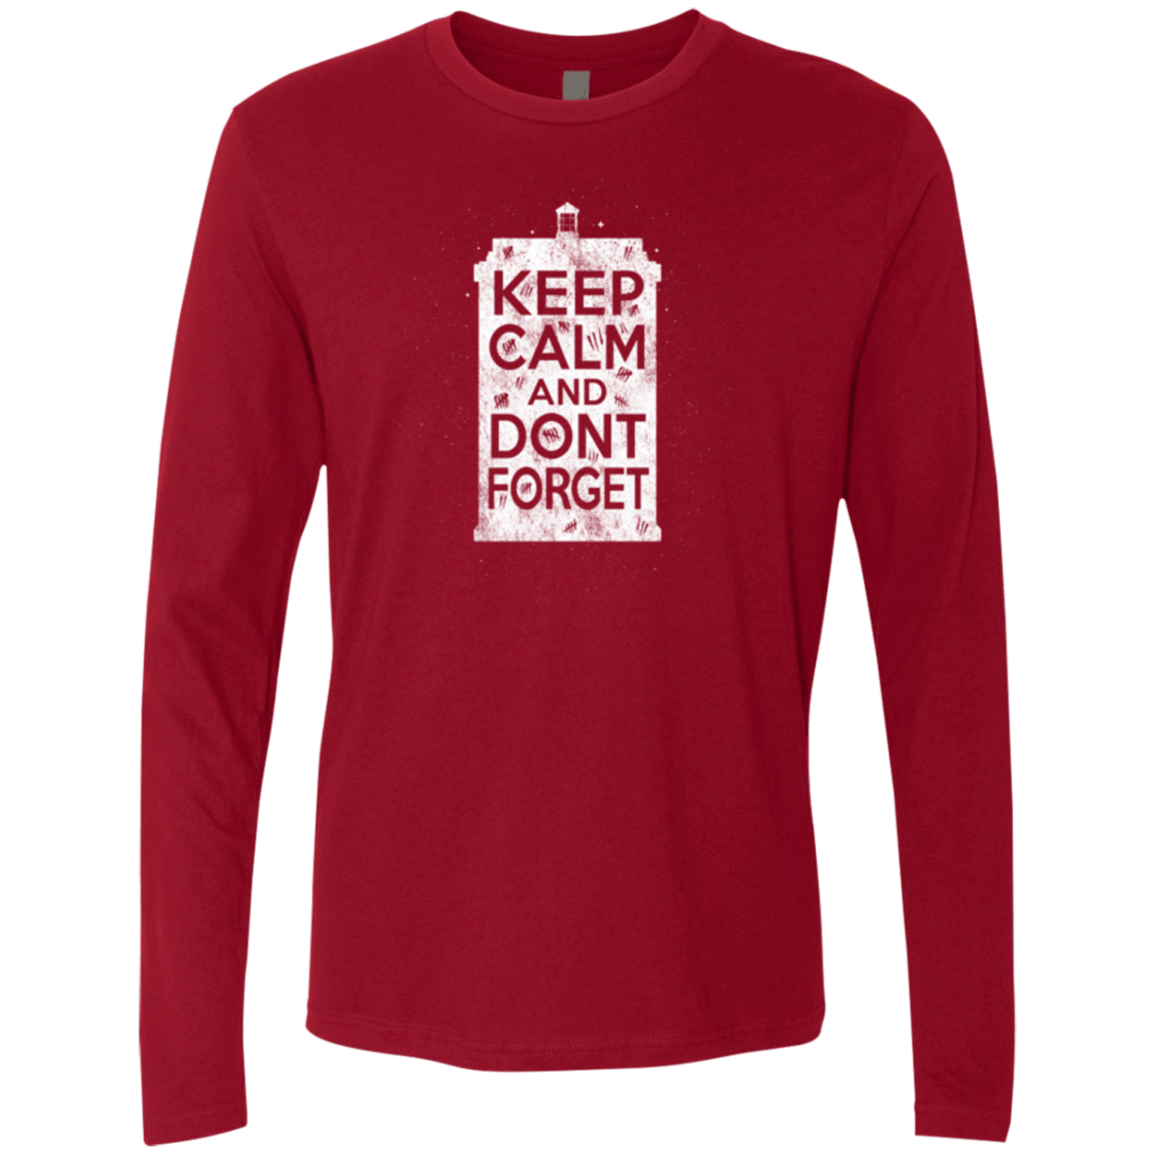 T-Shirts Cardinal / Small KCDF Tardis Men's Premium Long Sleeve